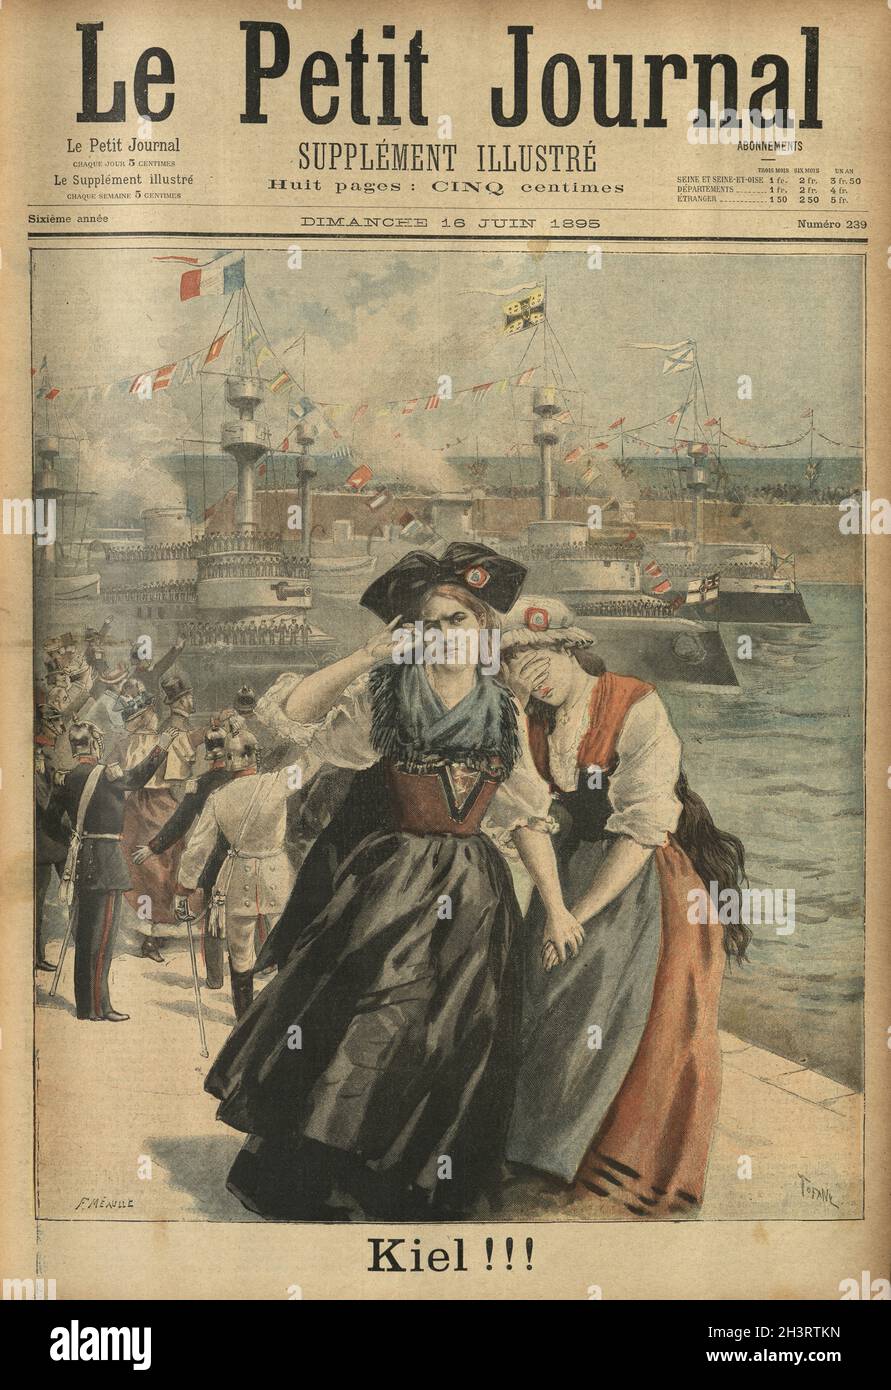 Copertina di le Petit Journal. Kiel, donne francesi piangenti al lancio di nuove navi da guerra tedesche, Kiel !!! Foto Stock